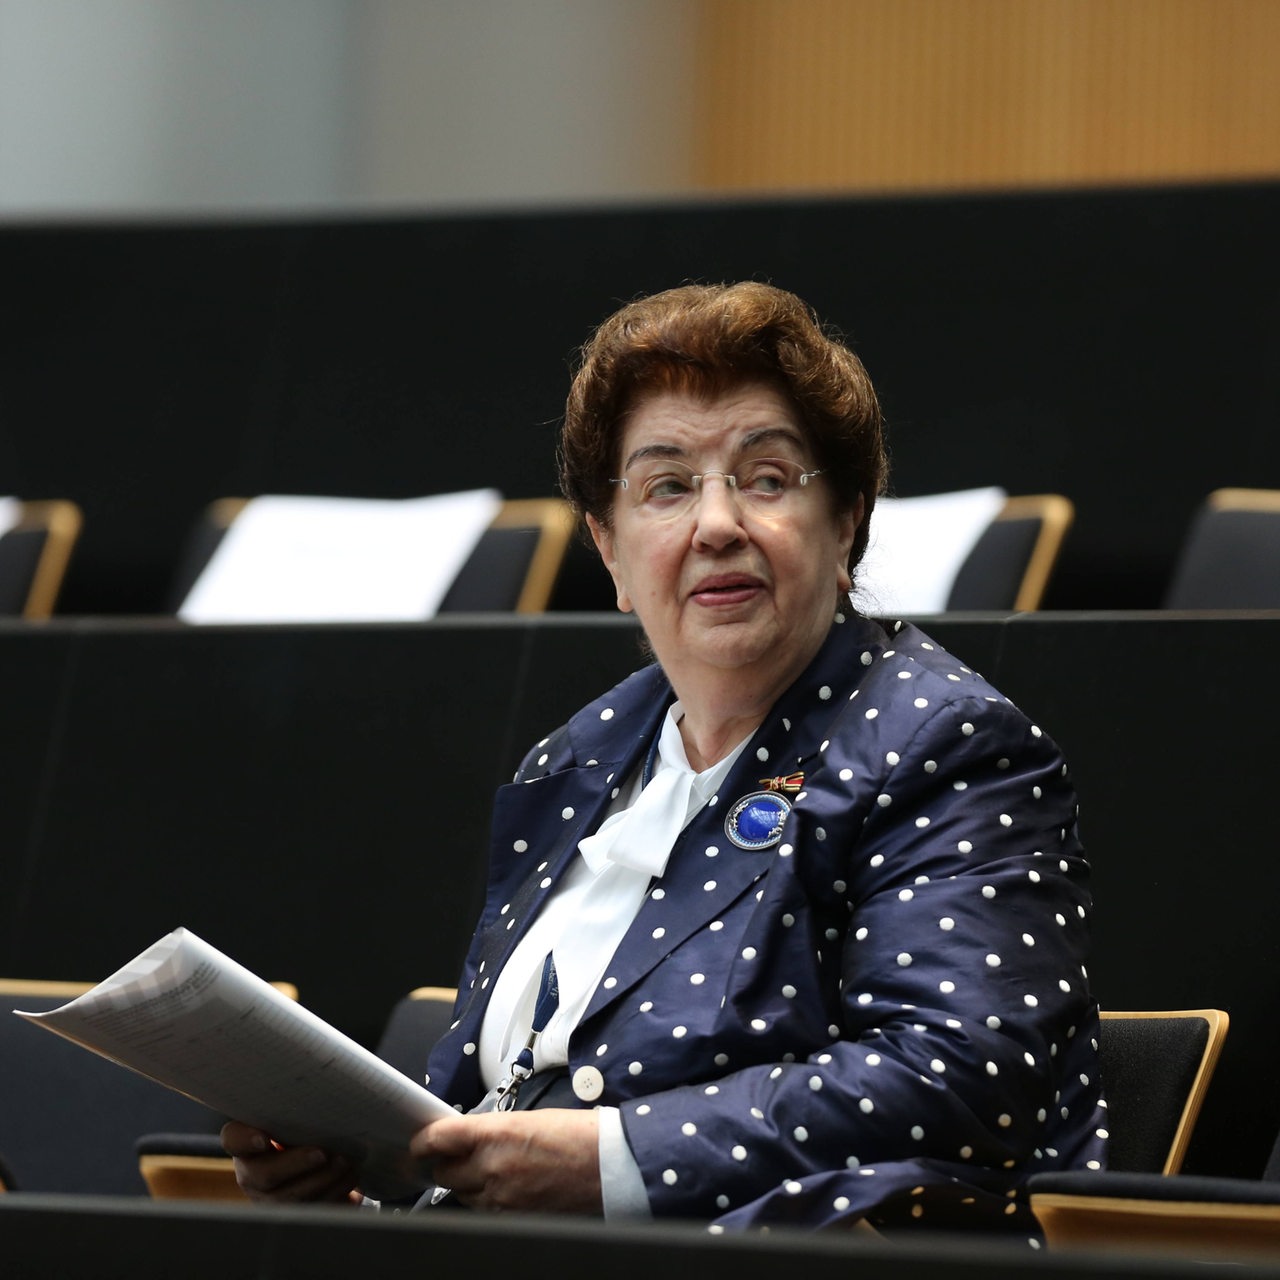 Lore Maria Peschel-Gutzeit im Abgeordnetenhaus 2016